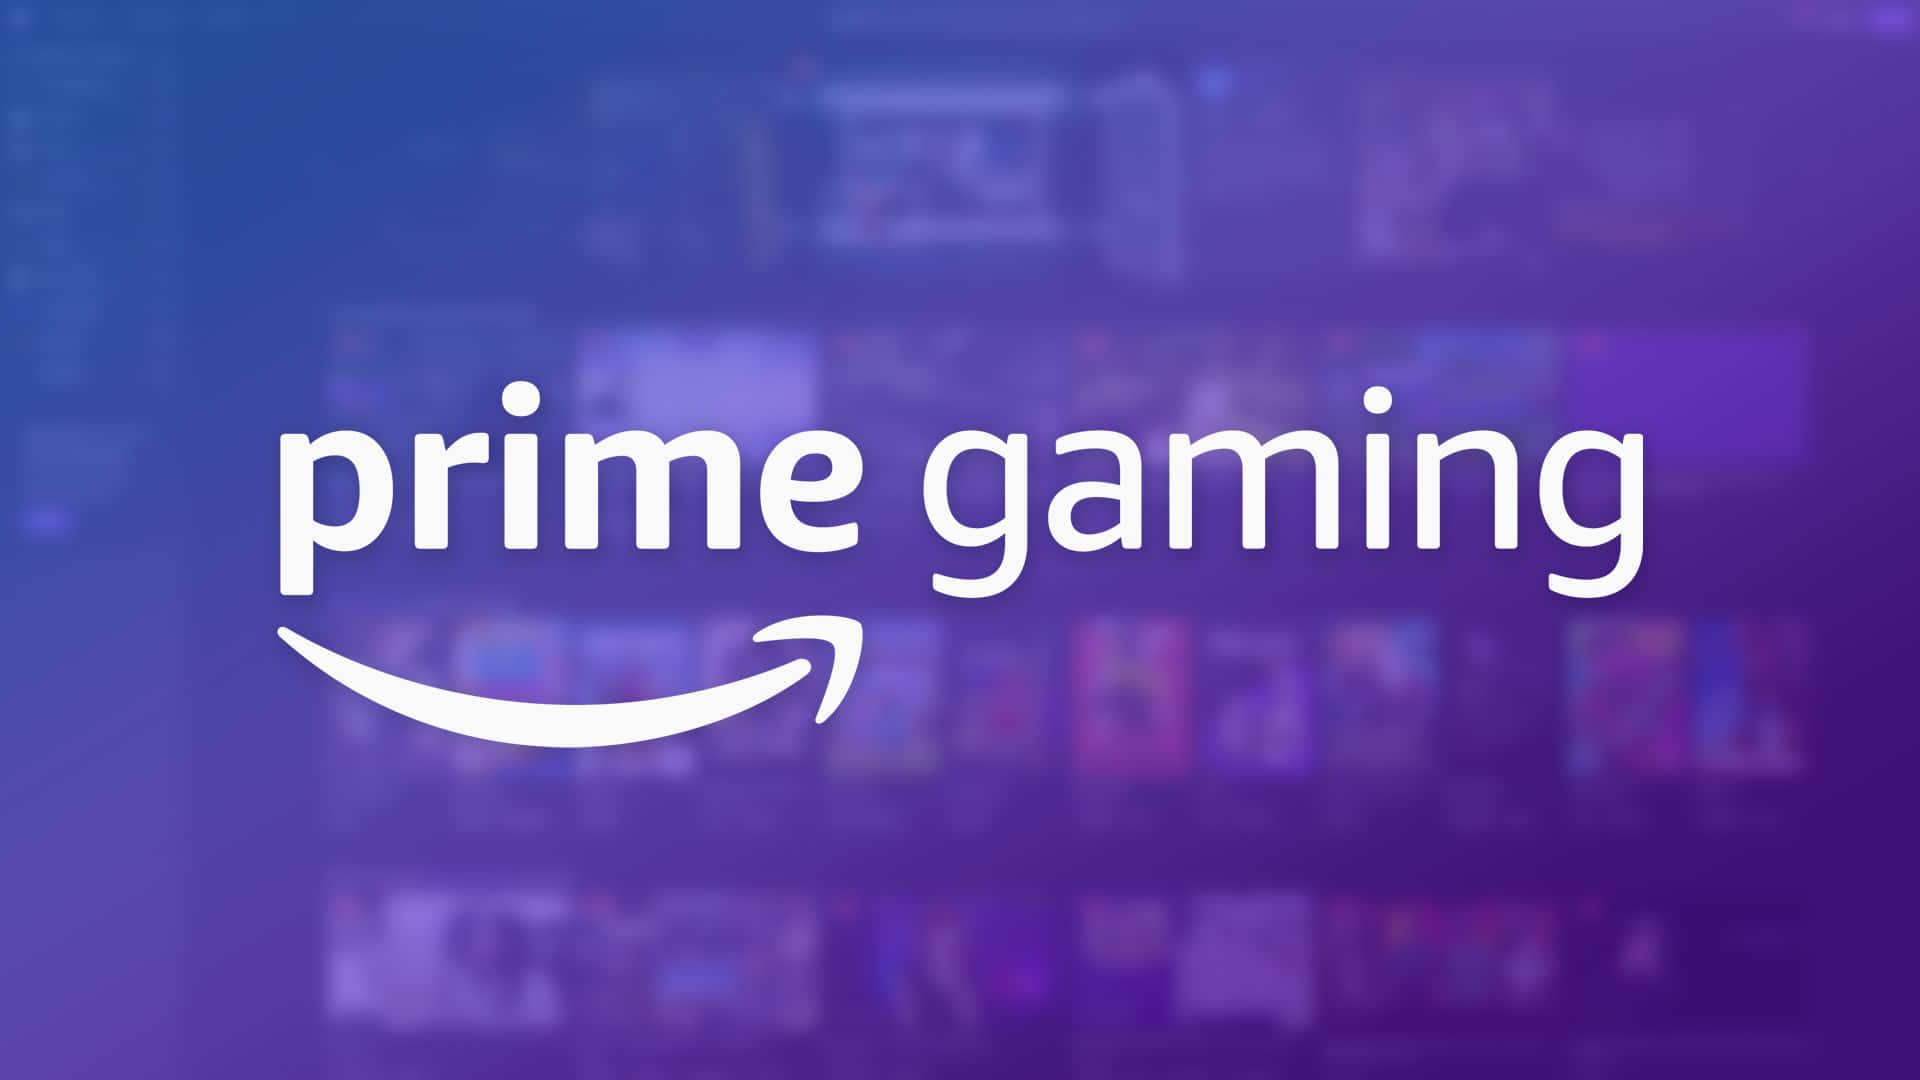 Prime Gaming distribui 25 jogos grátis para seus assinantes!